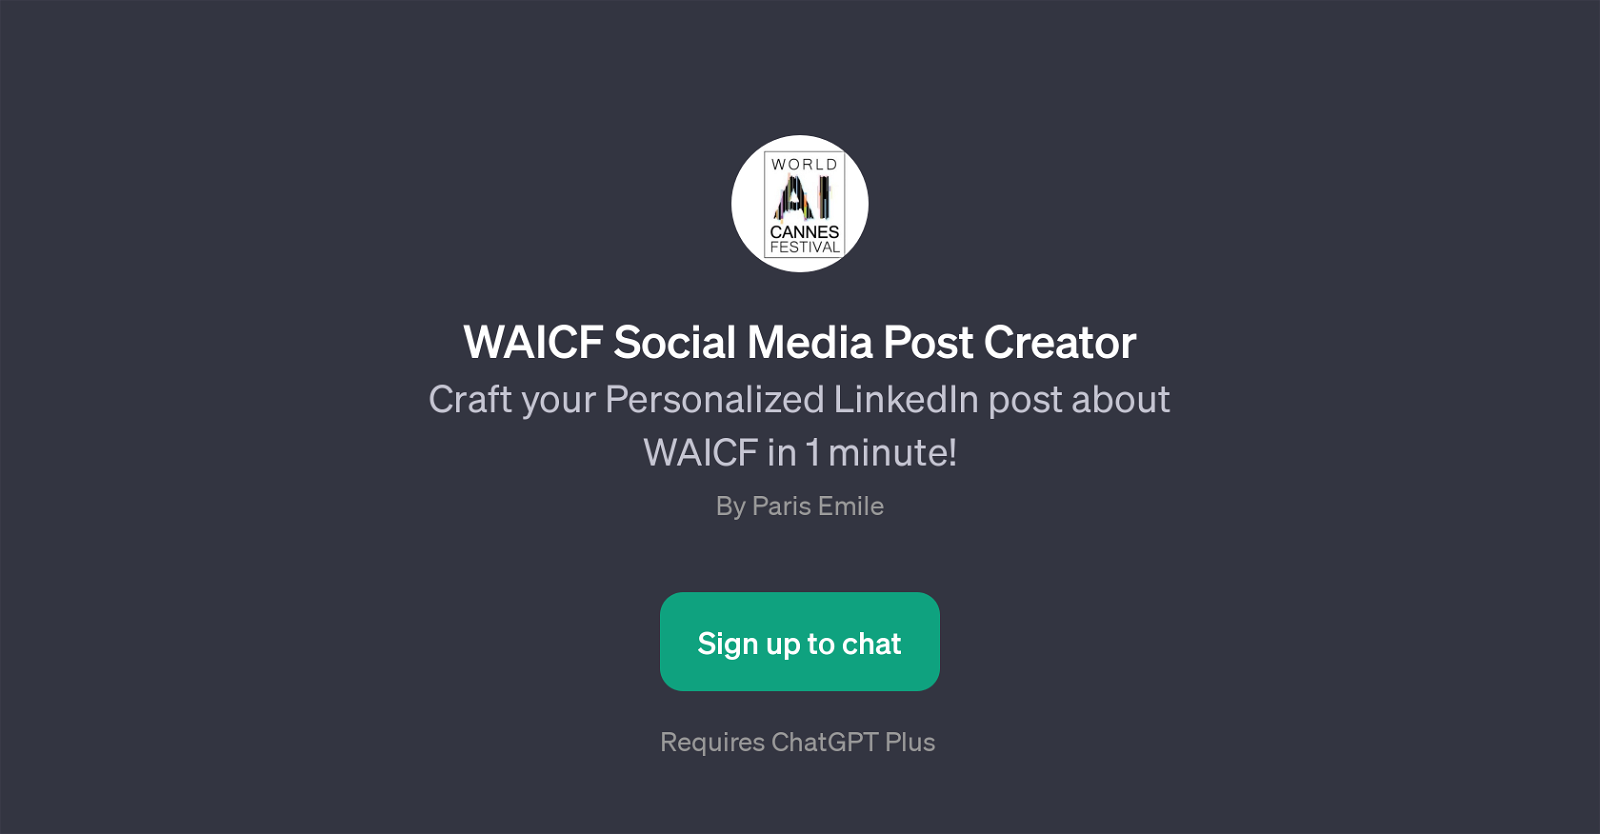 WAICF Social Media Post Creator website